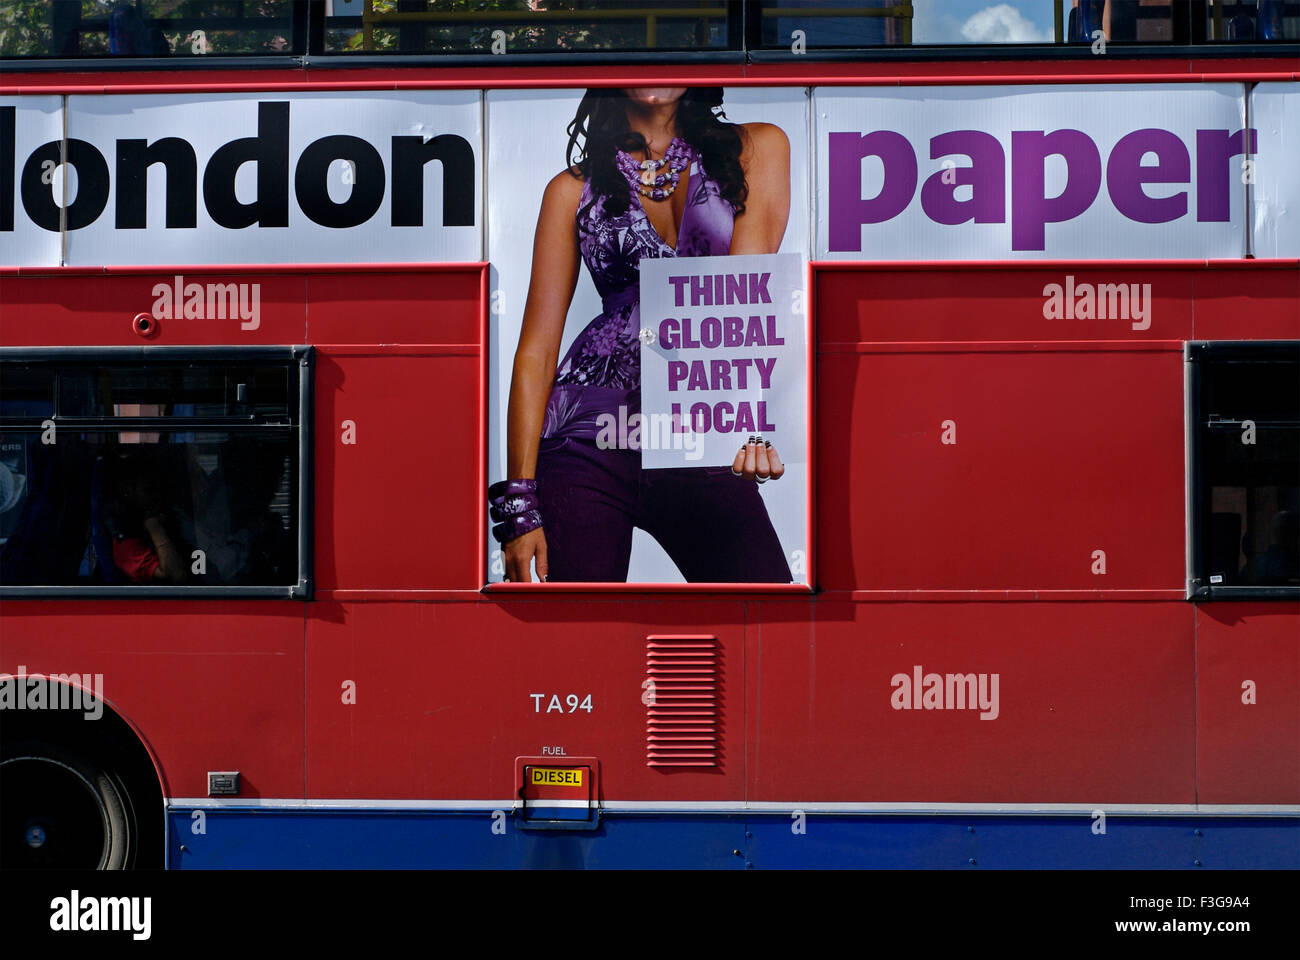 London Bus ; London ; England ; United Kingdom ; UK Stock Photo